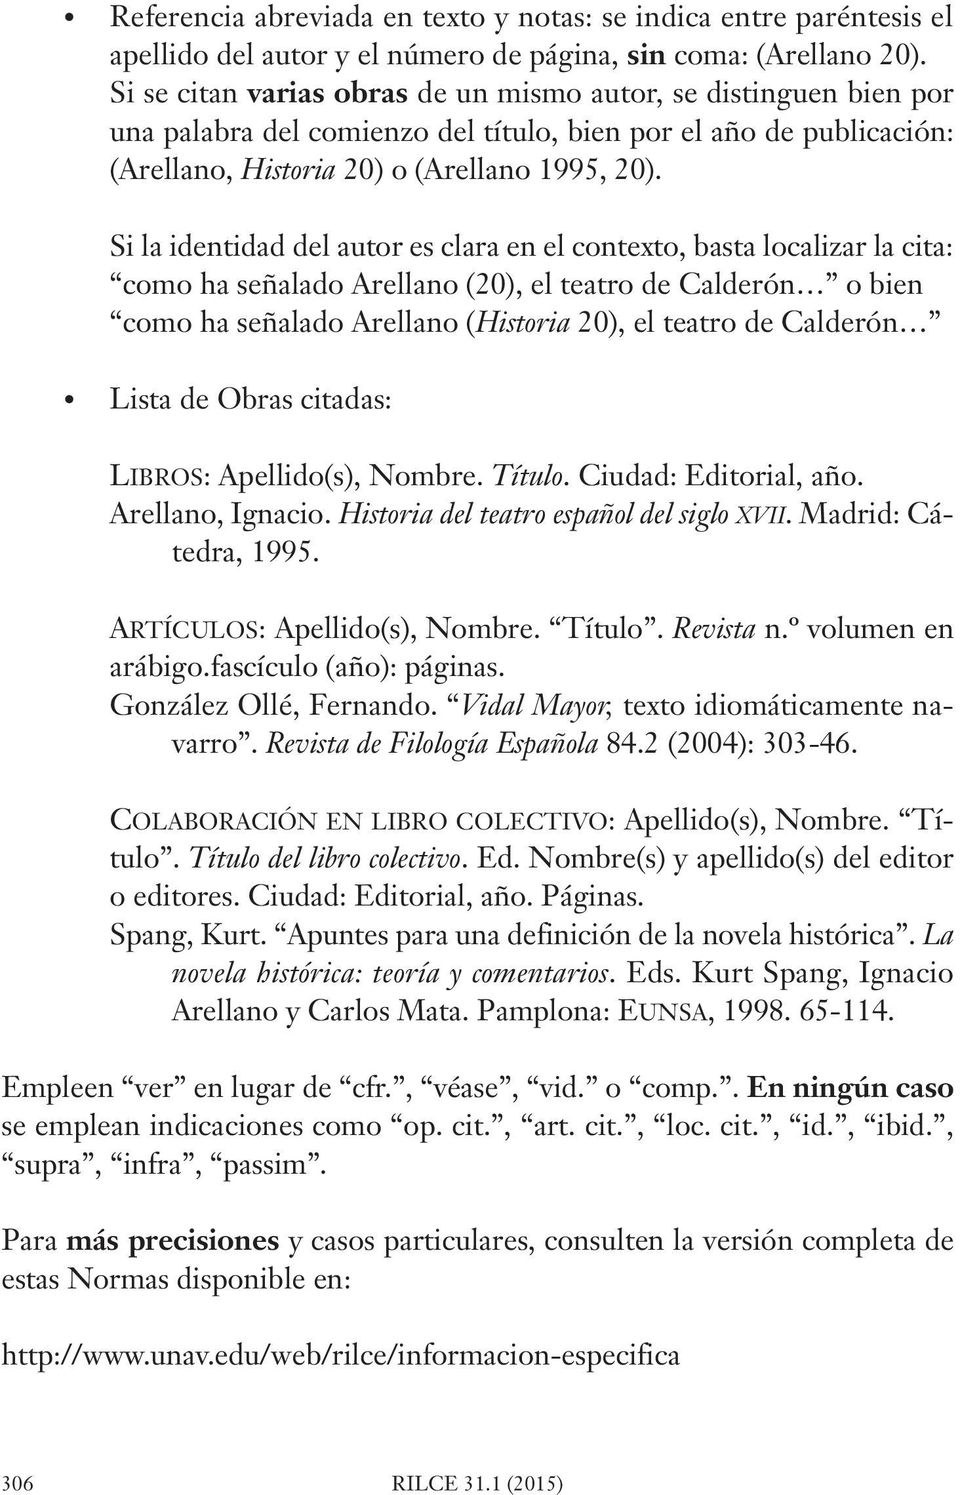 Si la identidad del autor es clara en el contexto, basta localizar la cita: como ha señalado Arellano (20), el teatro de Calderón o bien como ha señalado Arellano (Historia 20), el teatro de Calderón